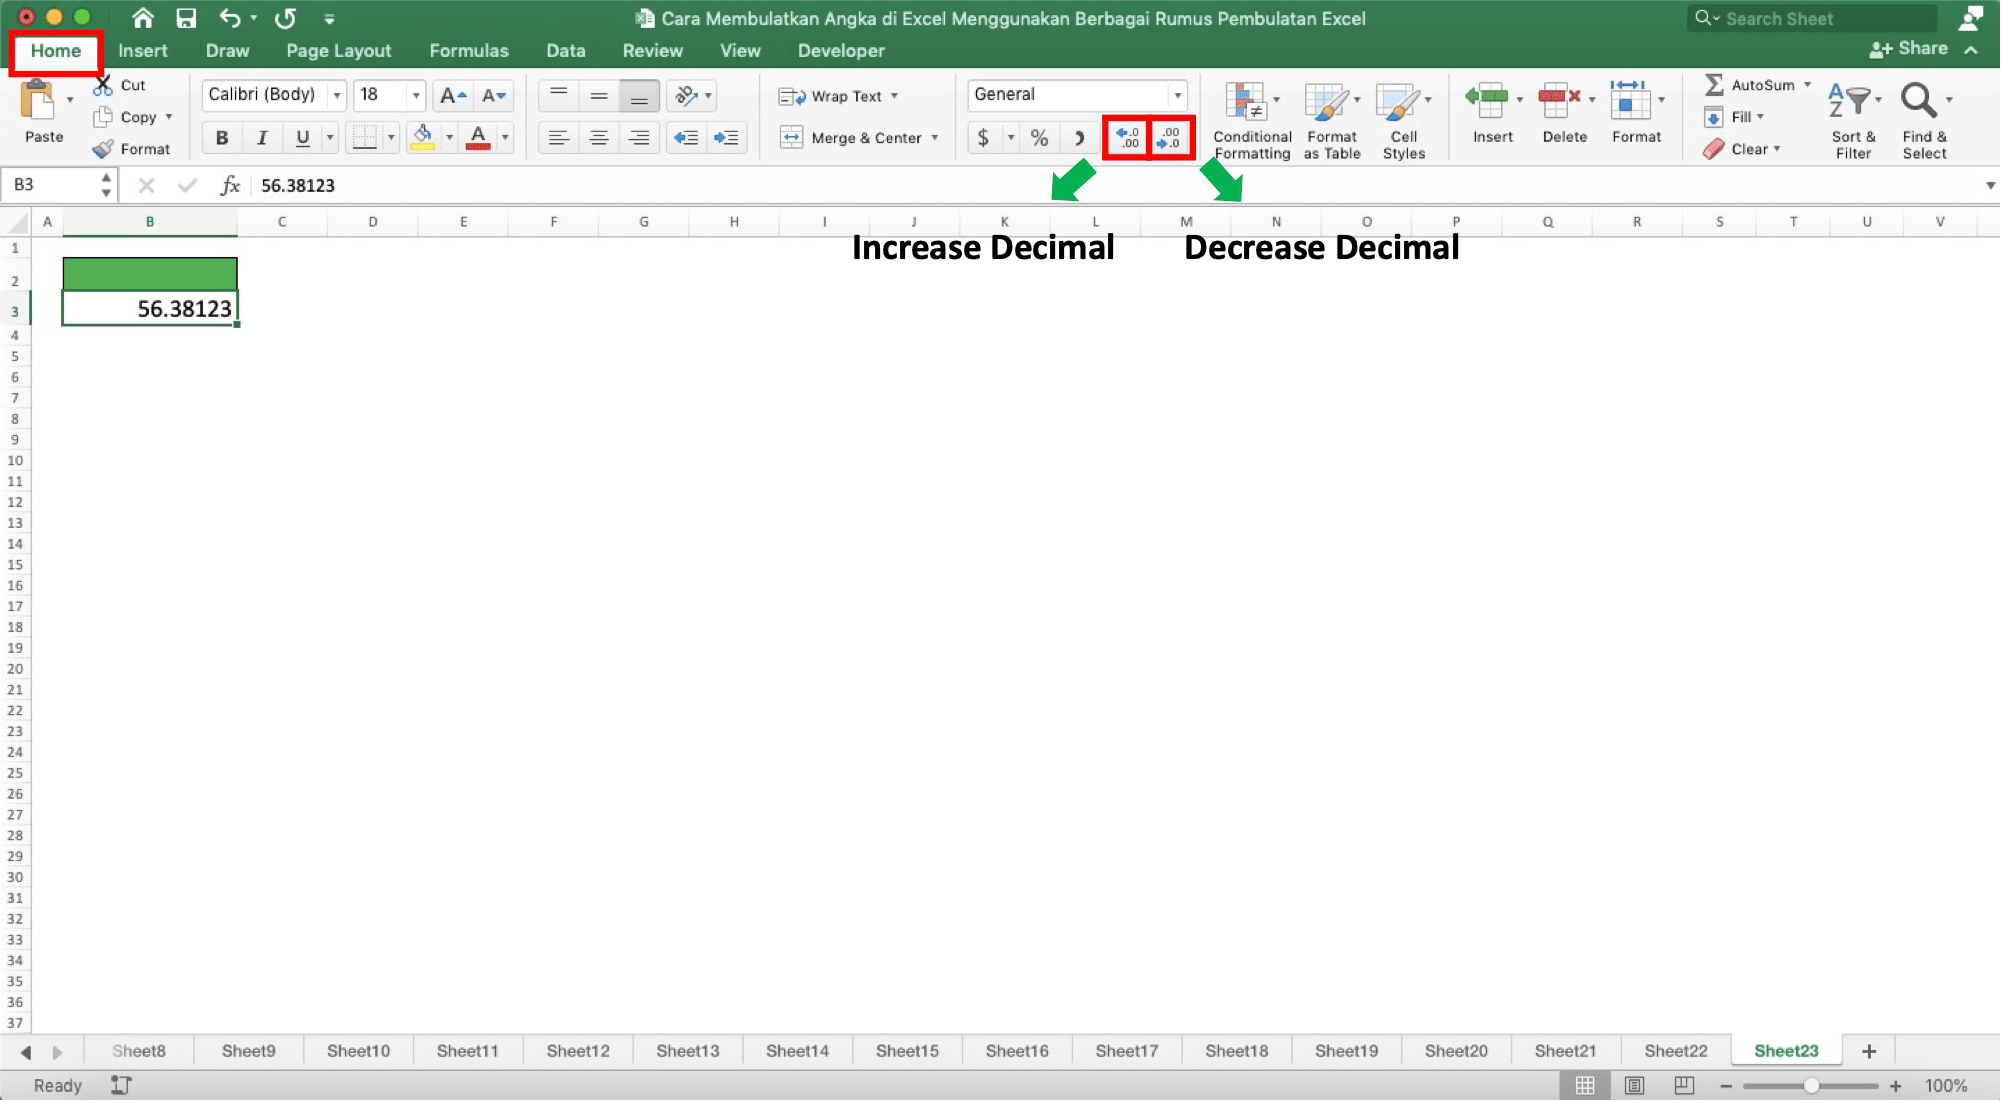 Cara Membulatkan Angka di Excel Menggunakan Berbagai Rumus Pembulatan Excel - Screenshot Lokasi Tombol Increase Decimal dan Decrease Decimal